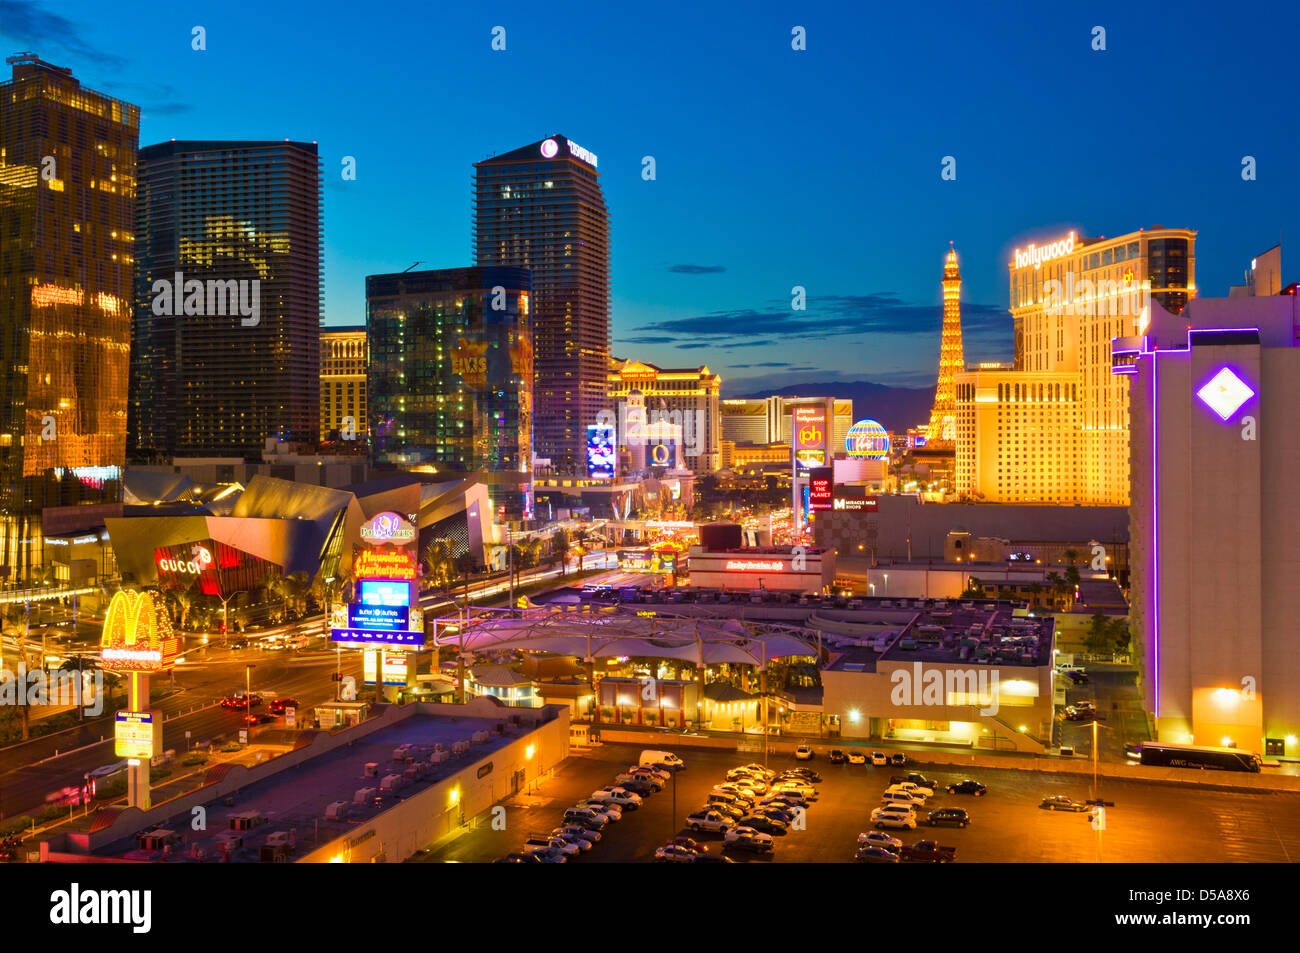 Las Vegas Strip Illuminated at night by Neon signs, Las Vegas Boulevard South, The Strip, Las Vegas, Nevada, USA Stock Photo